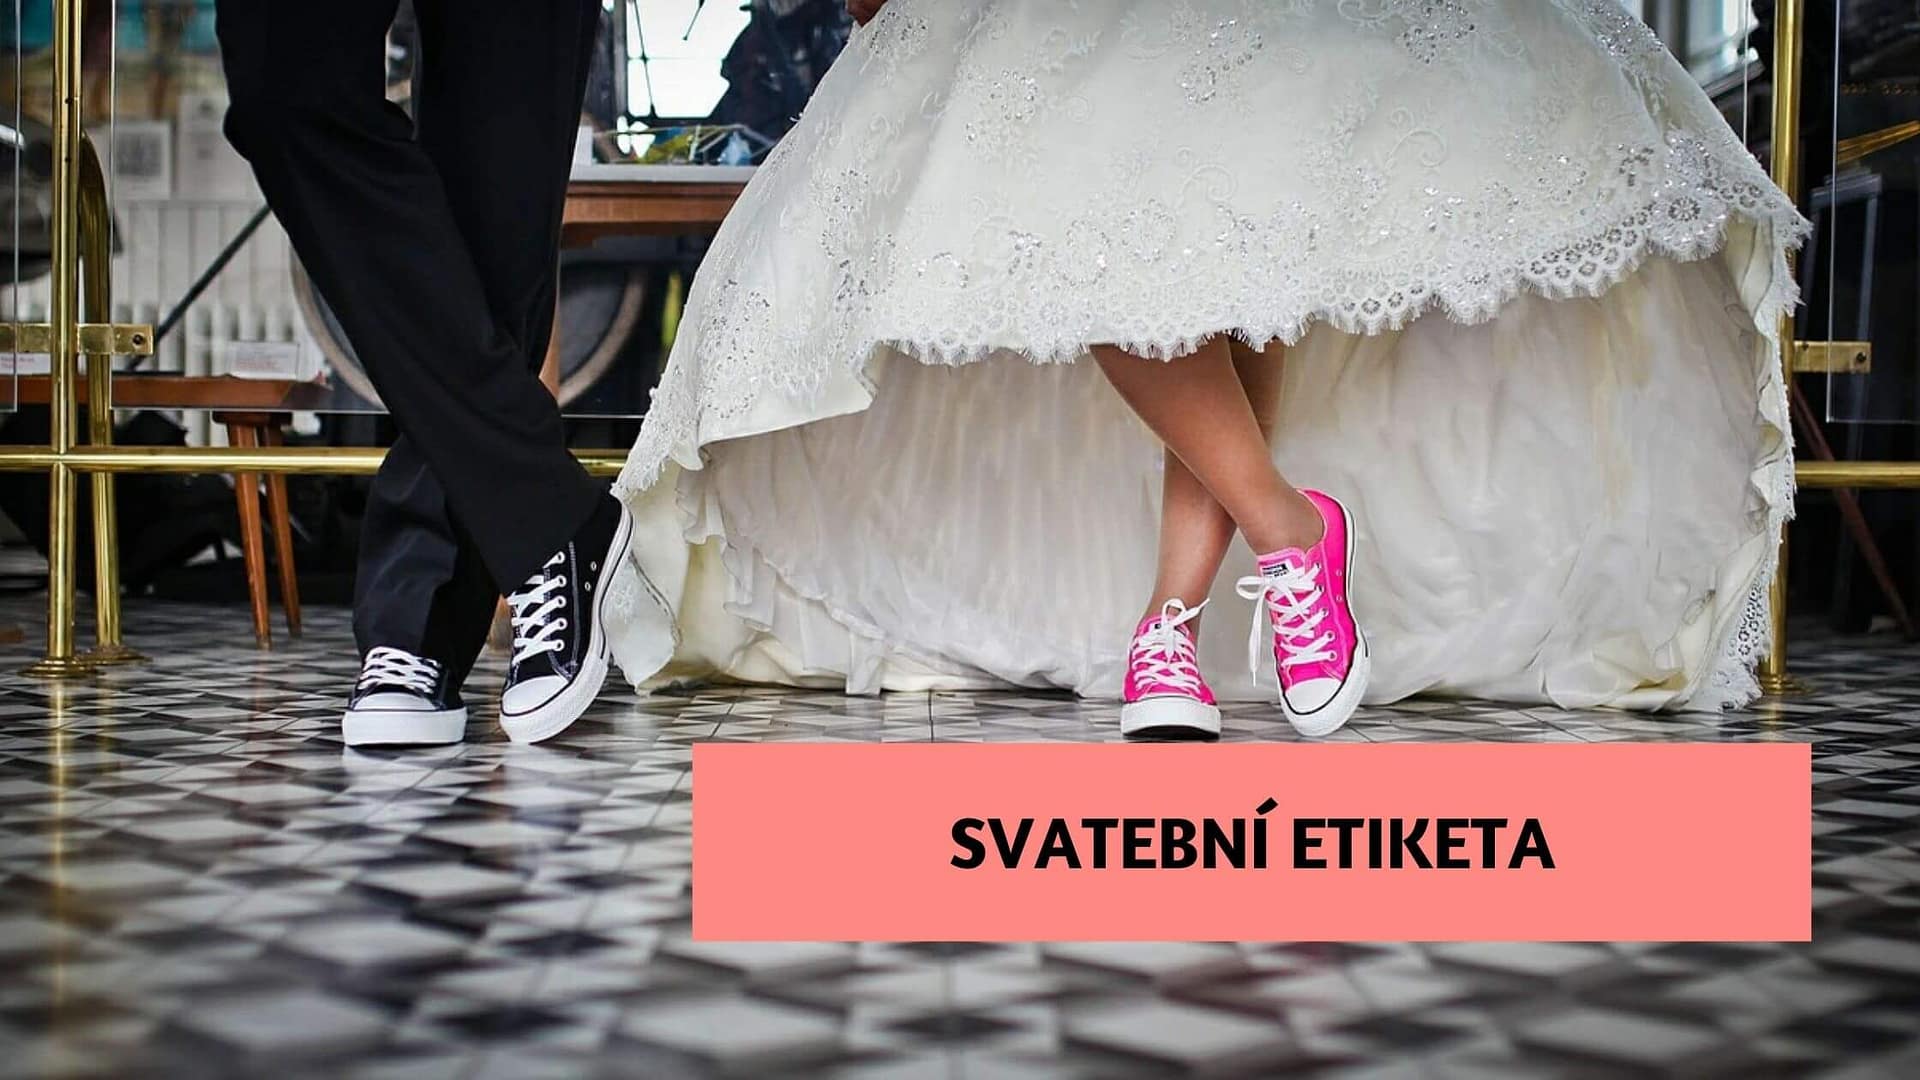 Svatební etiketa aneb pravidla chování na svatbě